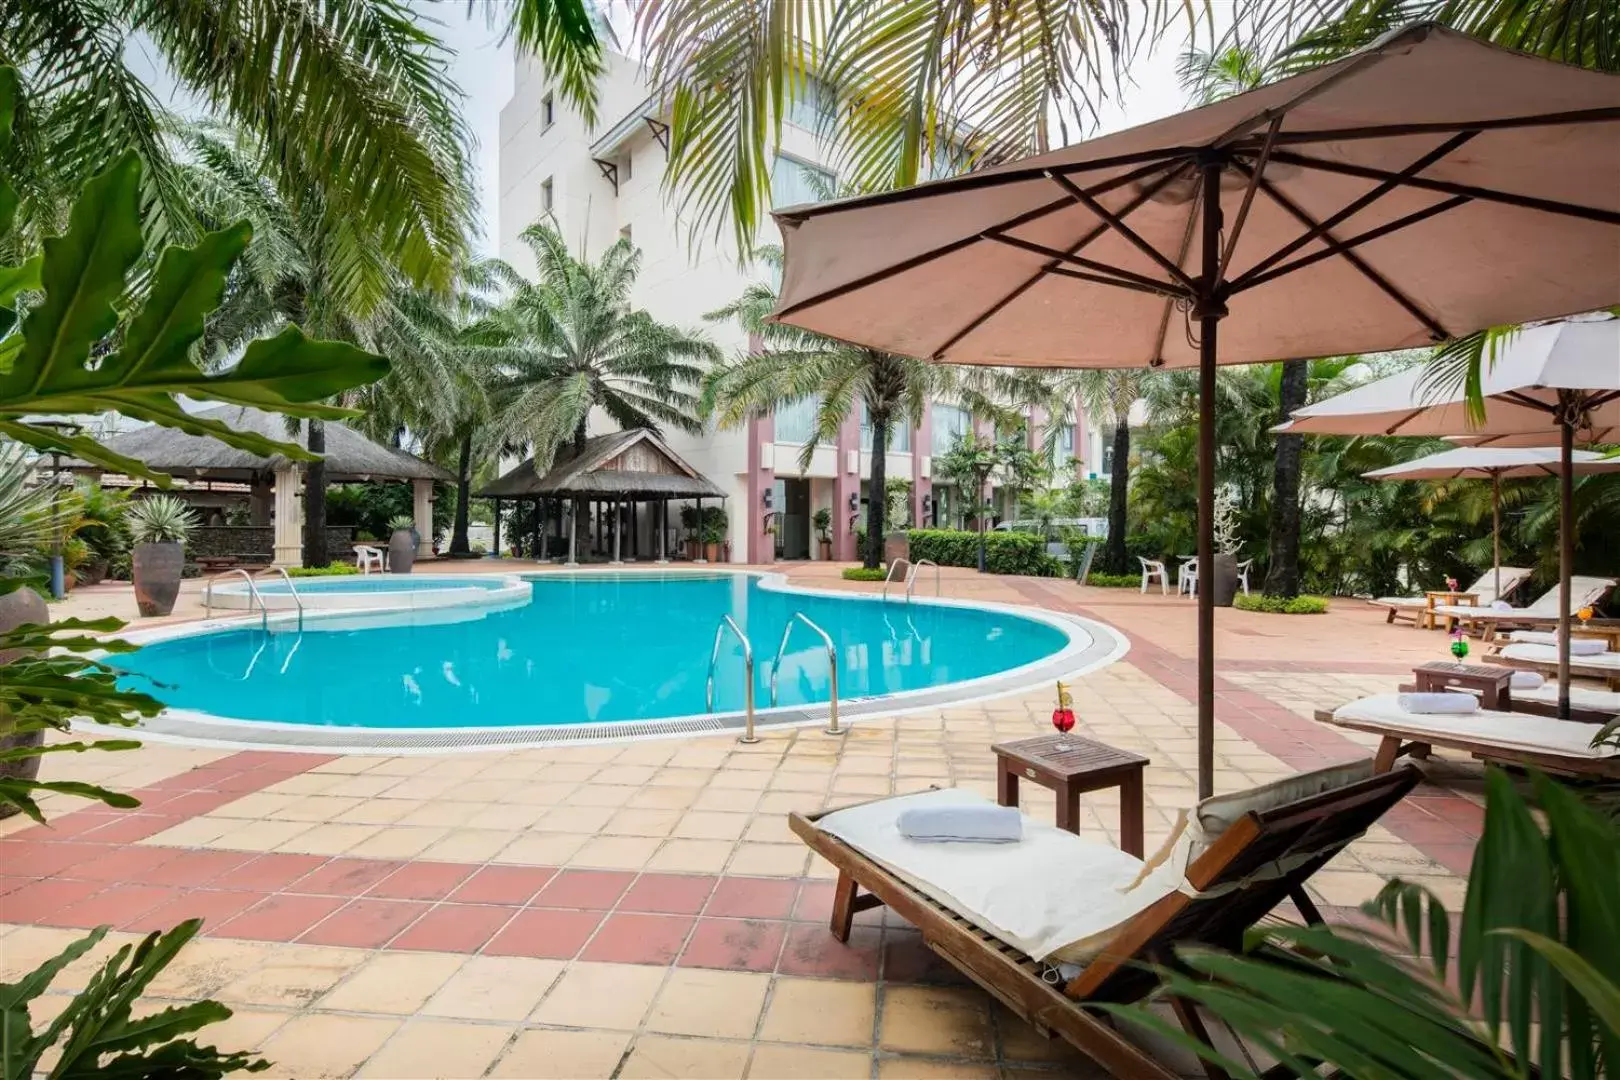 Swimming Pool in Sai Gon Quang Binh Hotel